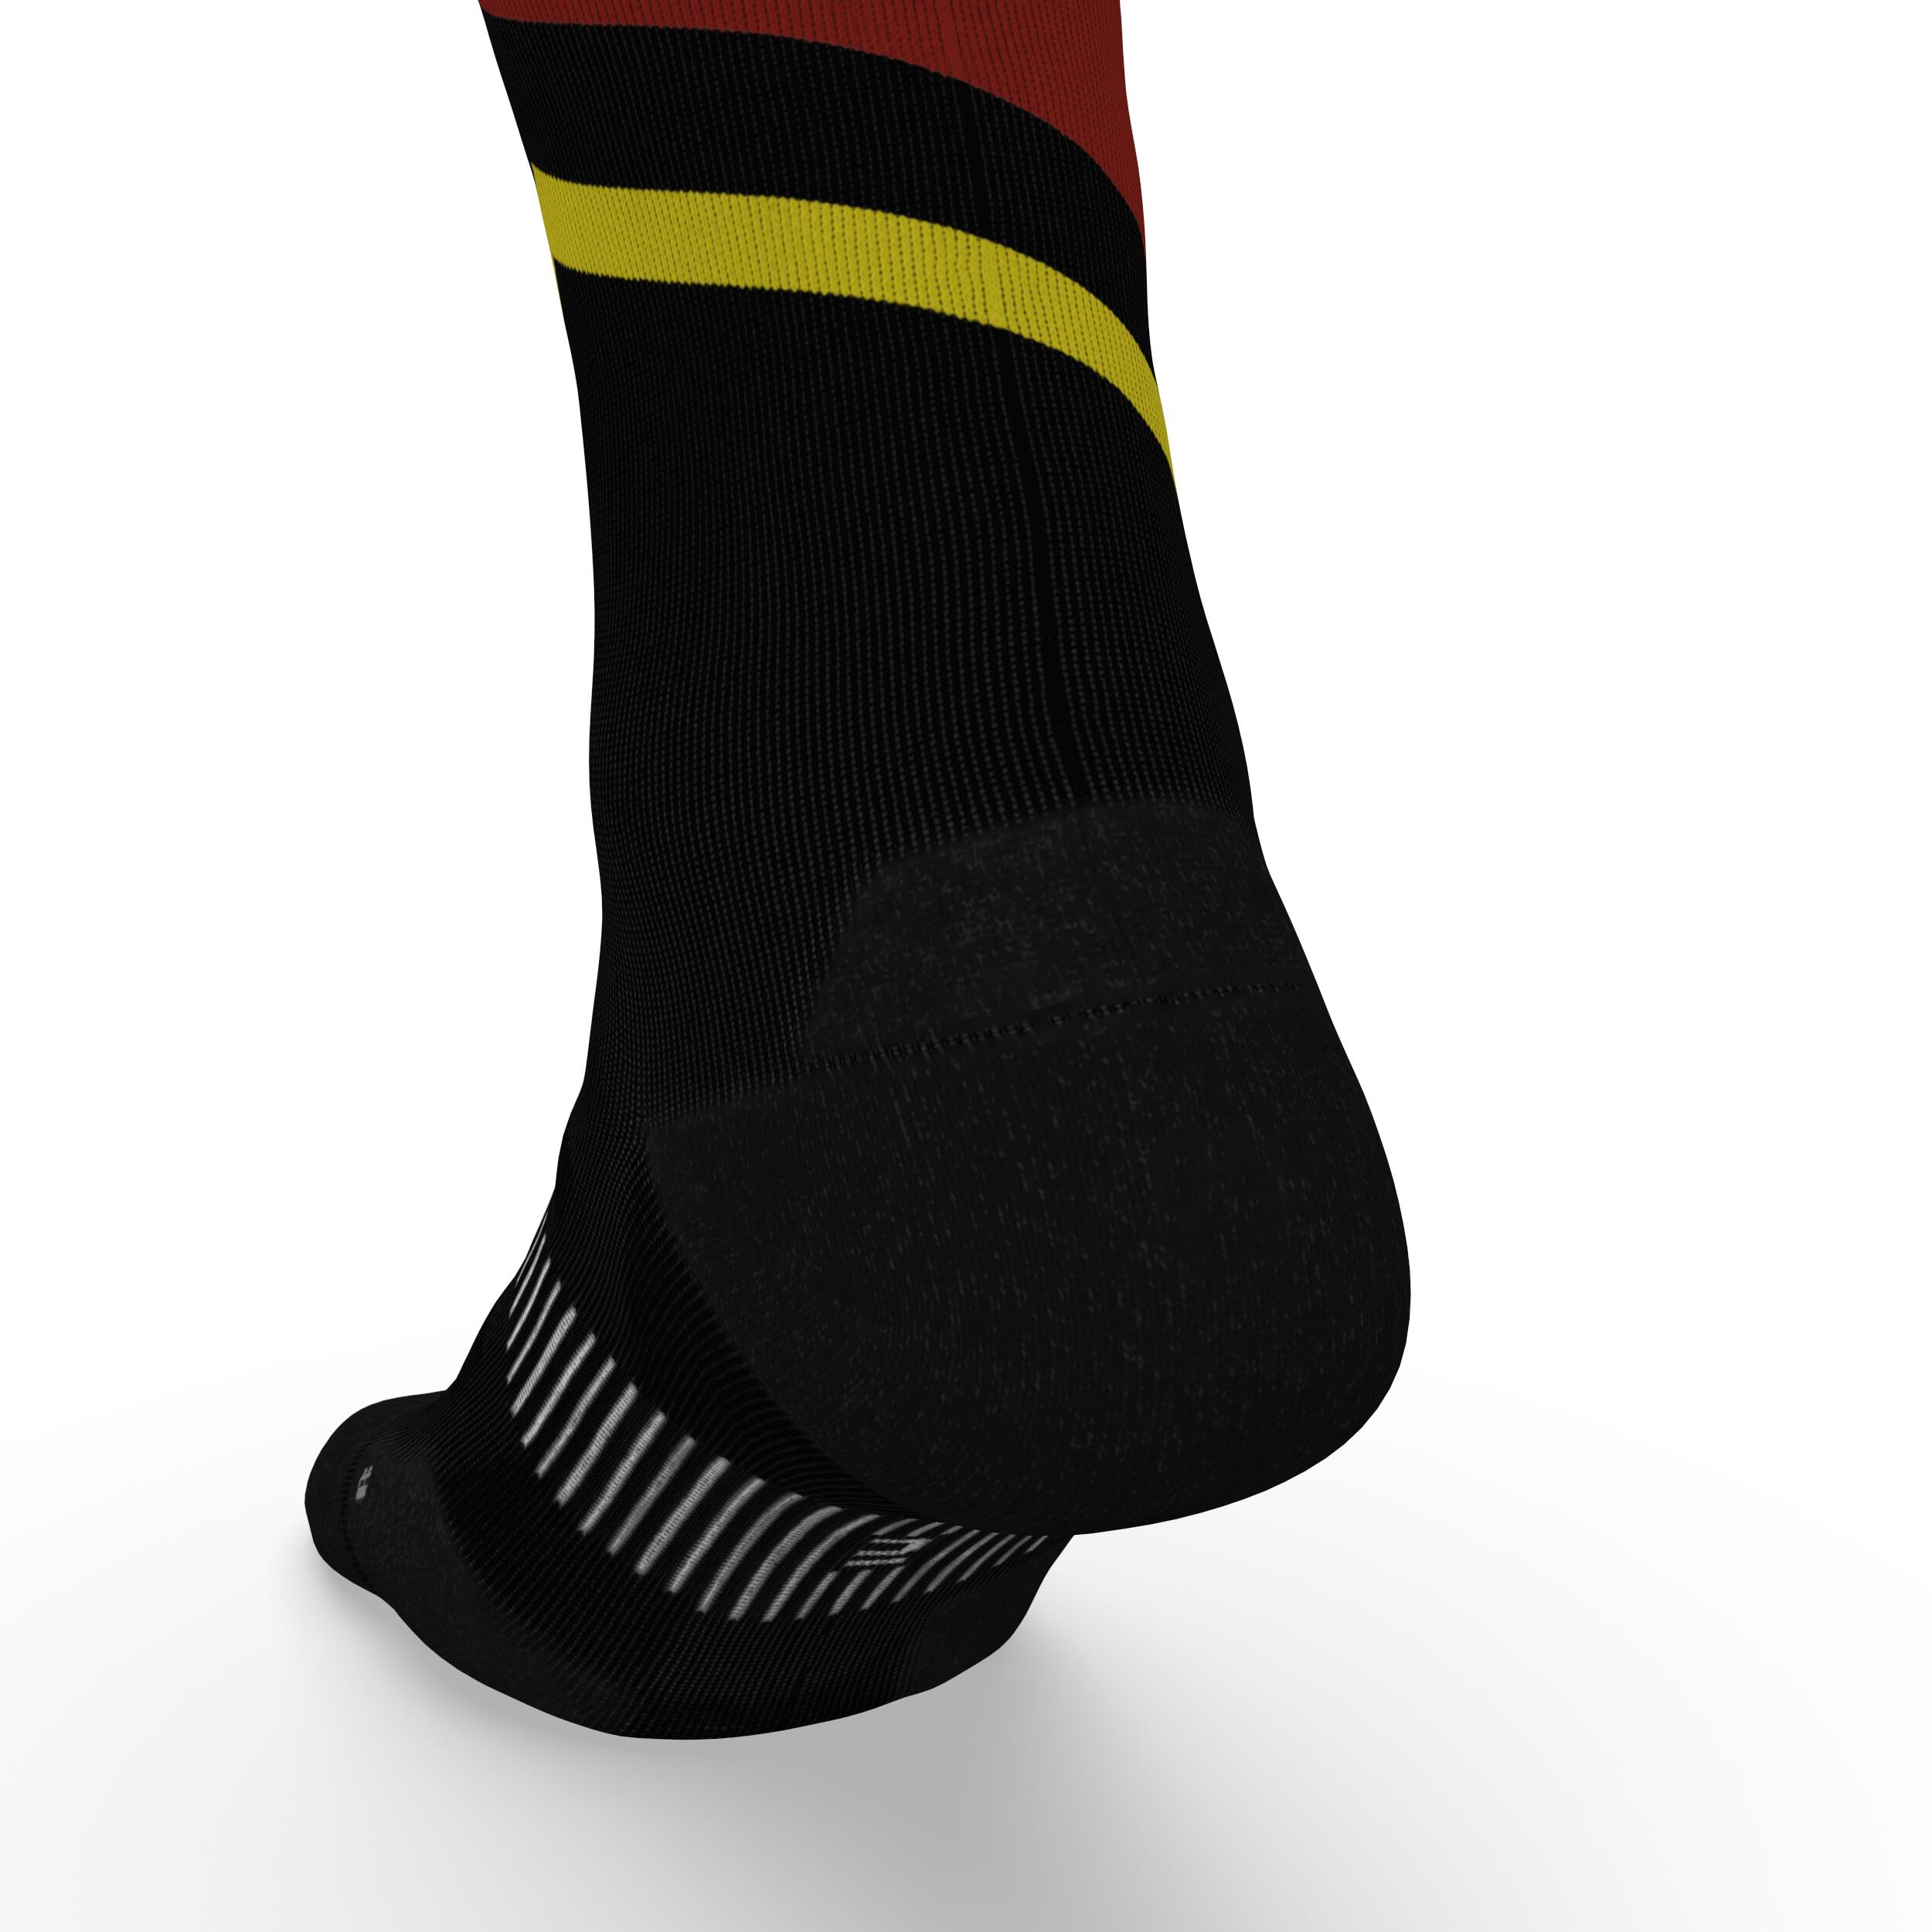 Run900 Mid-Calf Thick Running Socks - Black/Red/Yellow 6/6